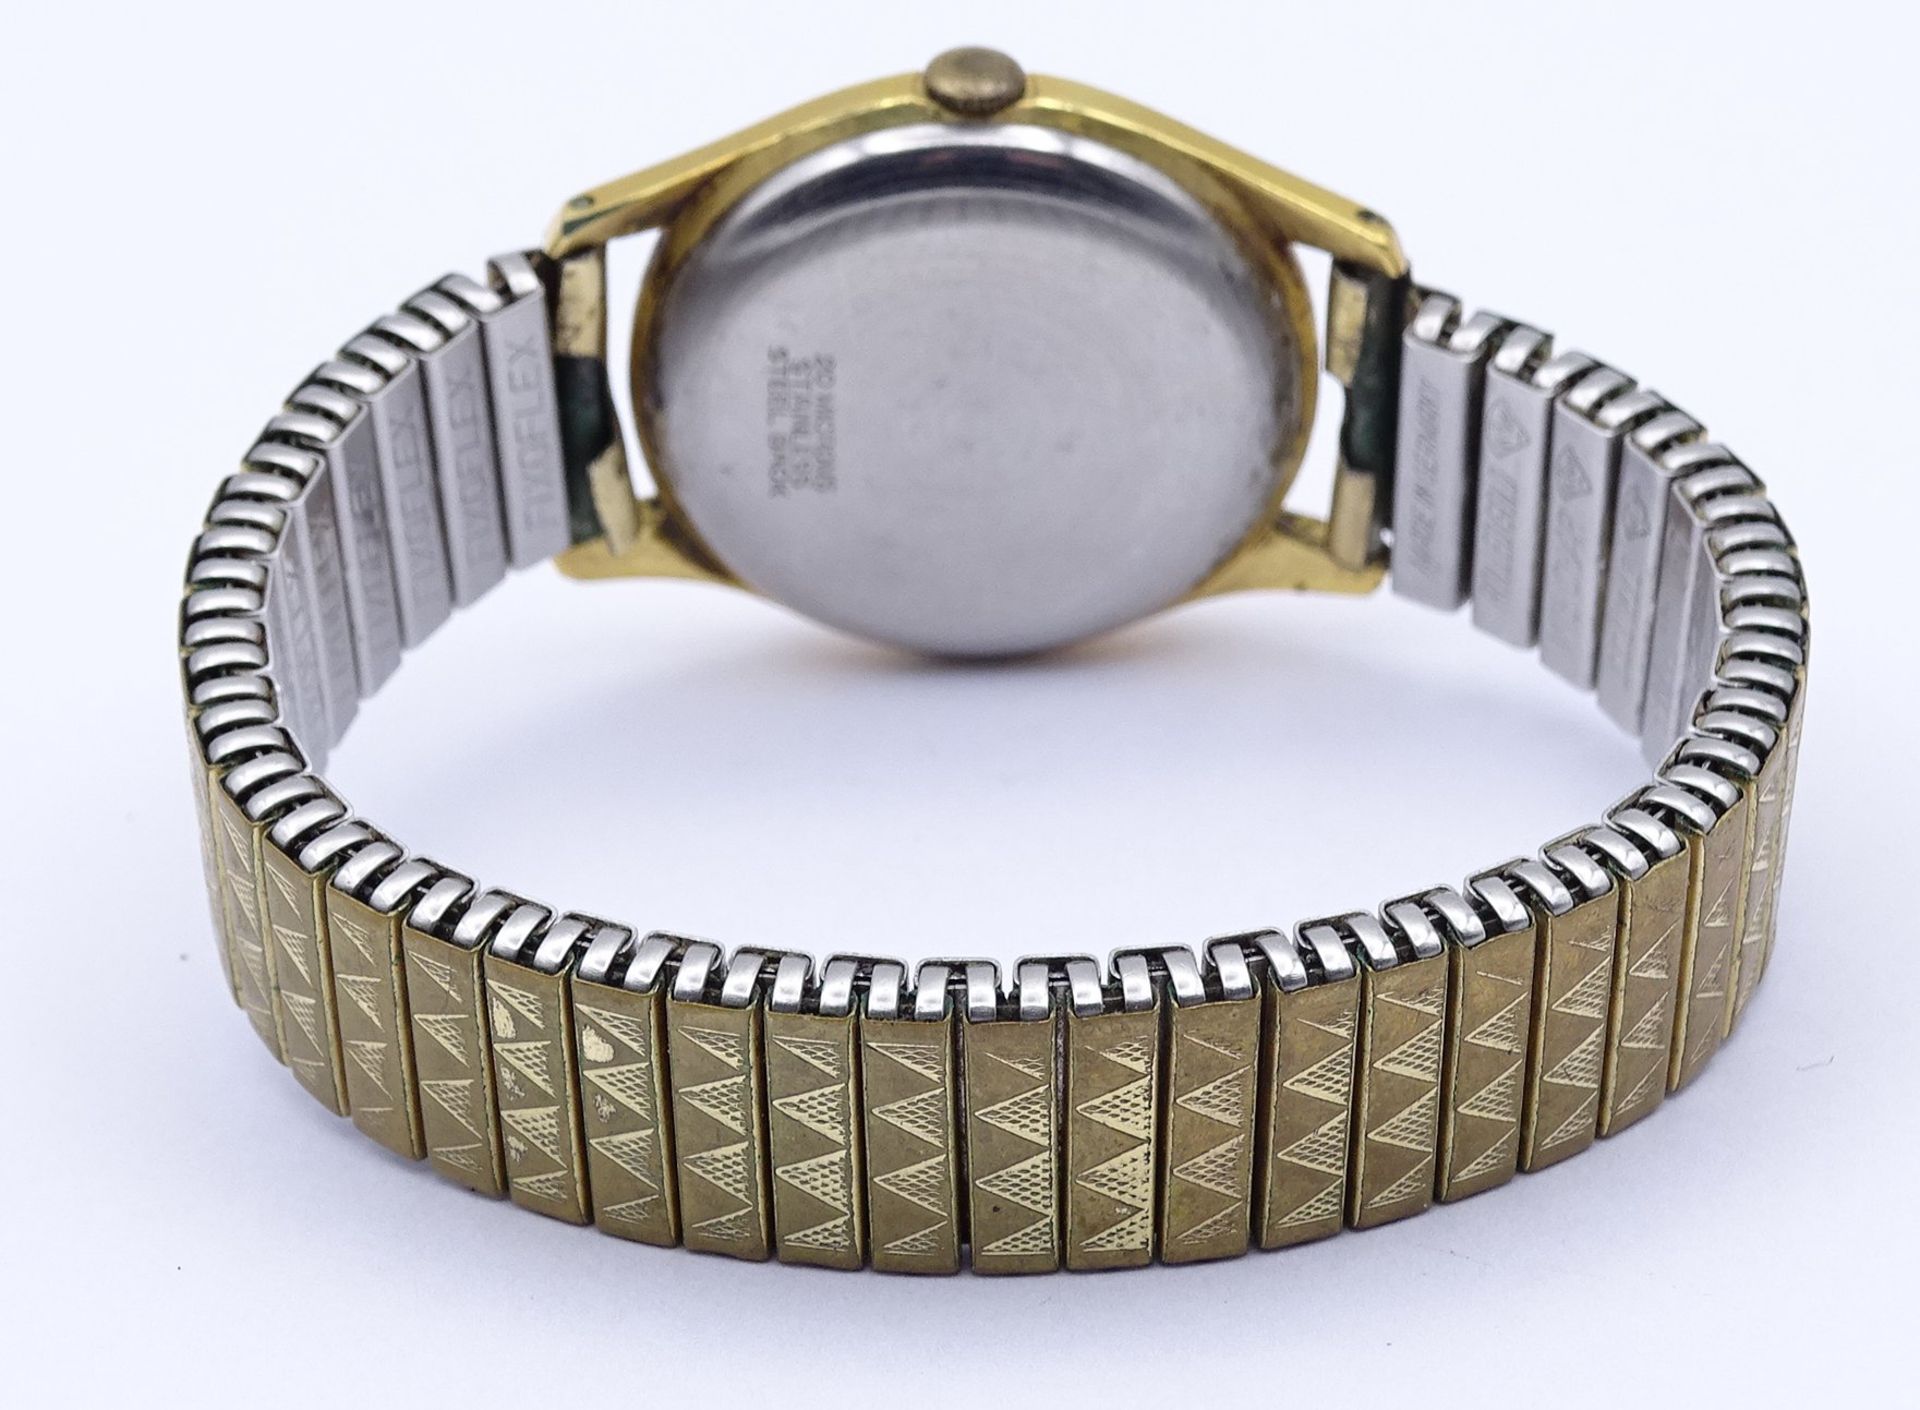 Armbanduhr Bifora Top, mechanisch, Werk läuft kurz an, D. 31mm, Alters- und Gebrauchsspuren - Bild 3 aus 4